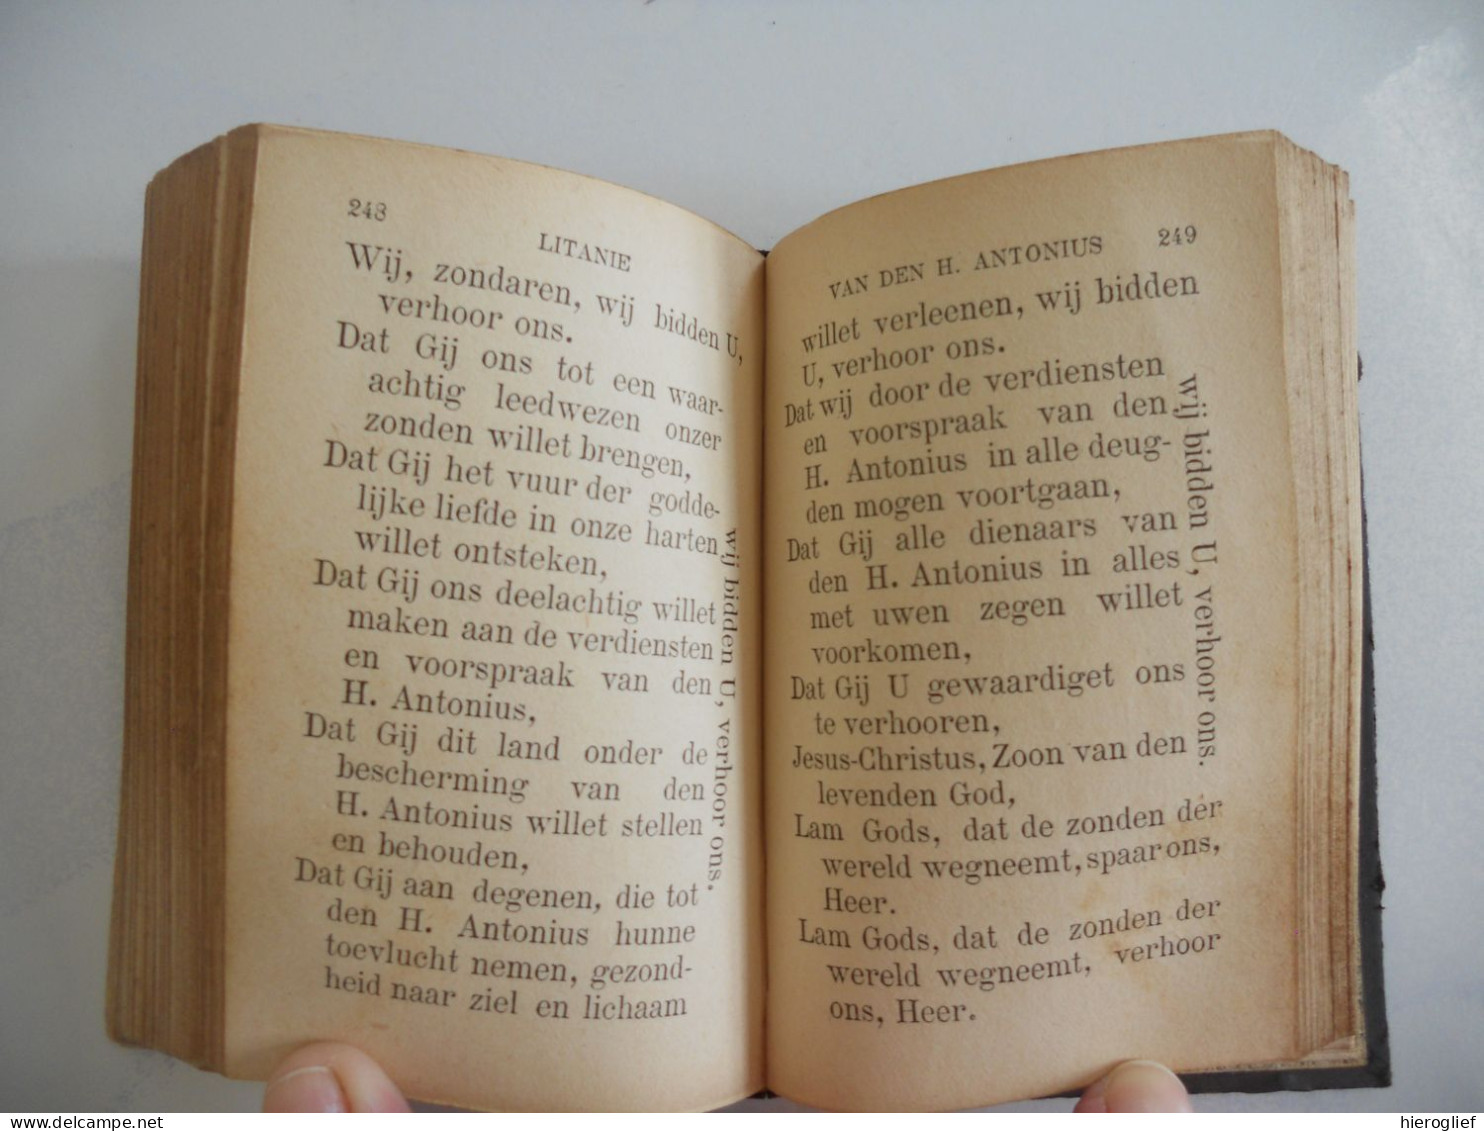 boek: GEBEDEN - 1900 Turnhout Brepols / godsdienst religie devotie geloof gebed